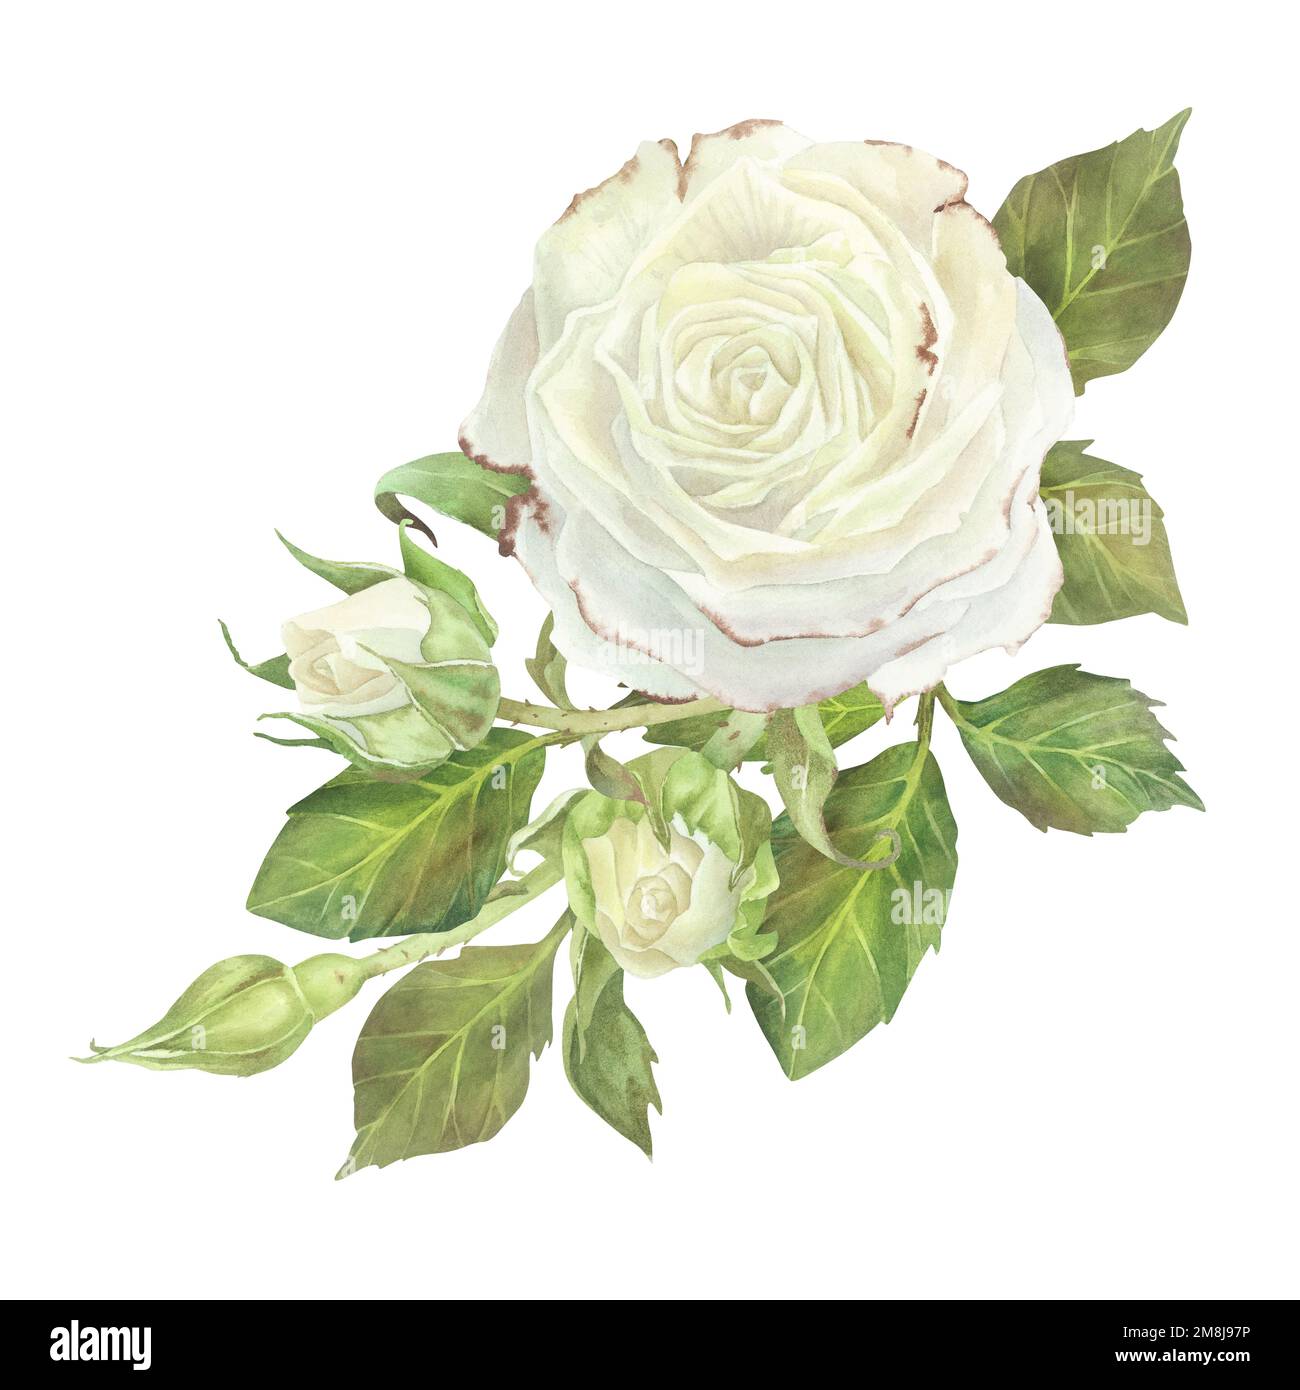 Weiße Rose mit Laubzusammensetzung. Aquarelldarstellung. Isoliert auf  weißem Hintergrund. Für die Gestaltung von Aufklebern, Geschirr,  Grußkarten, Schreibwaren Stockfotografie - Alamy